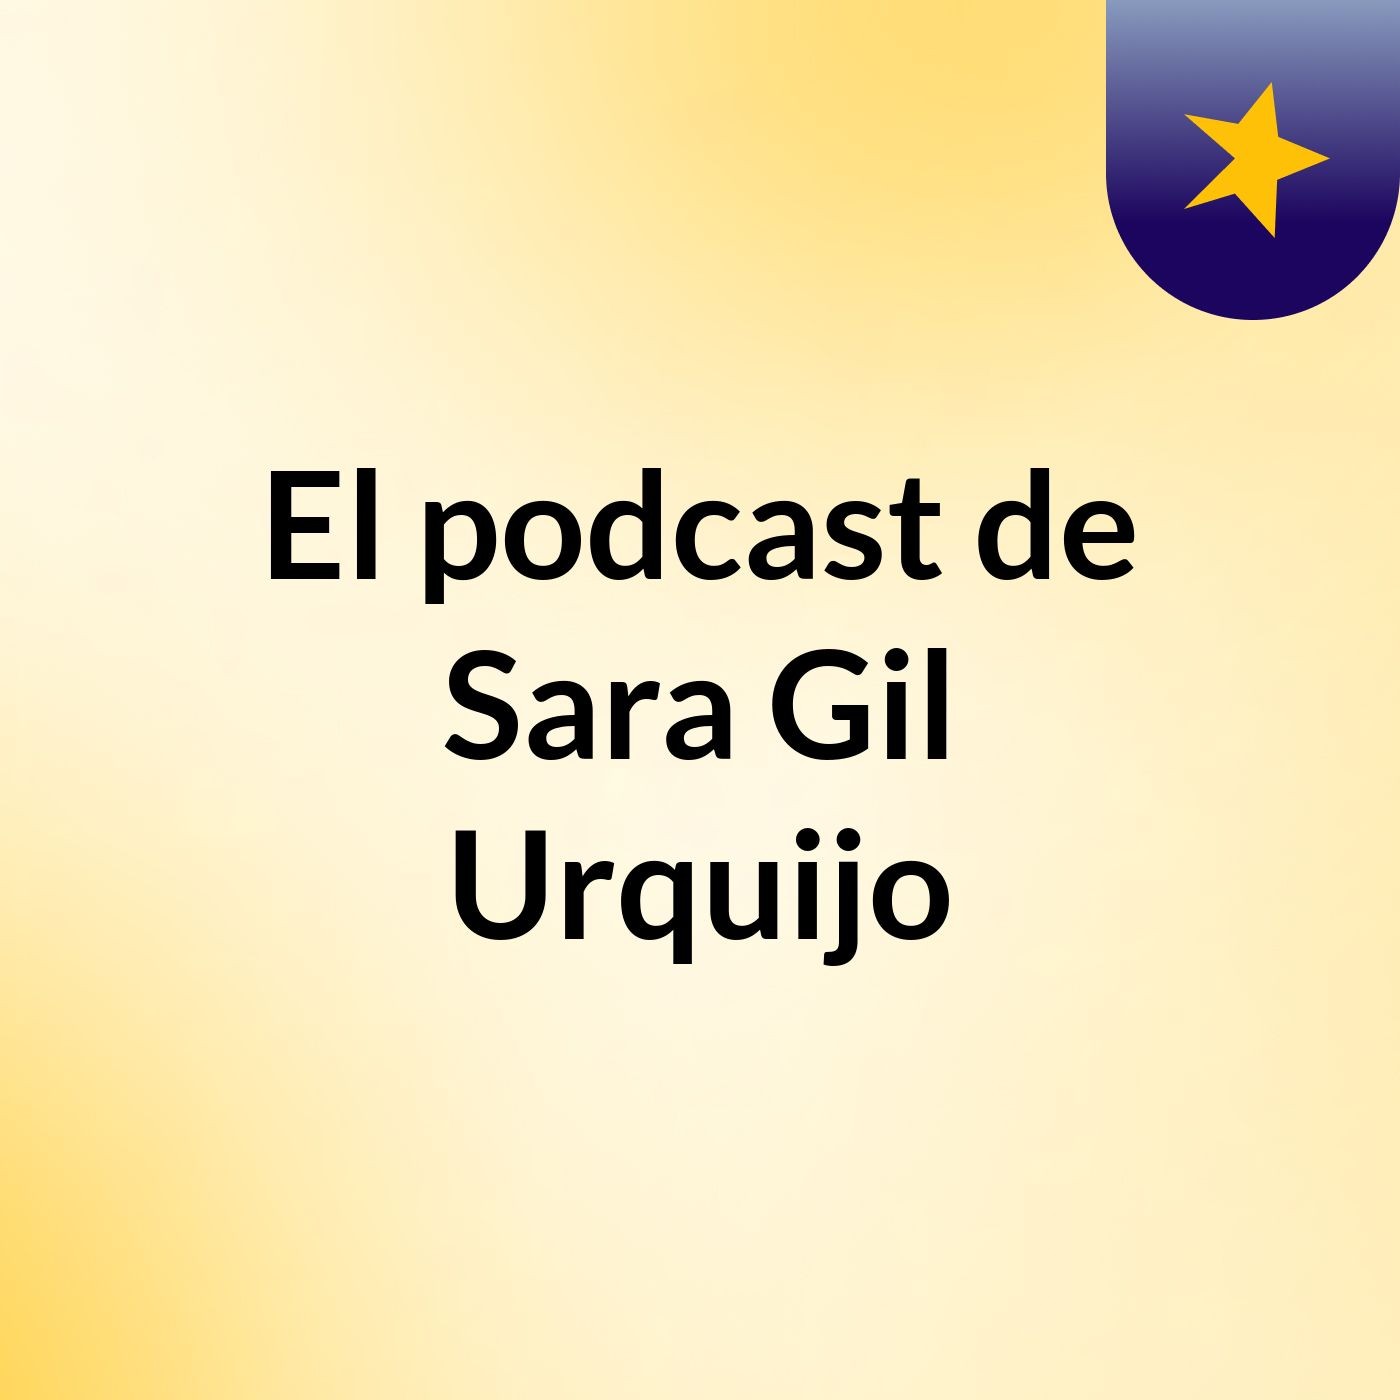 El podcast de Sara Gil Urquijo